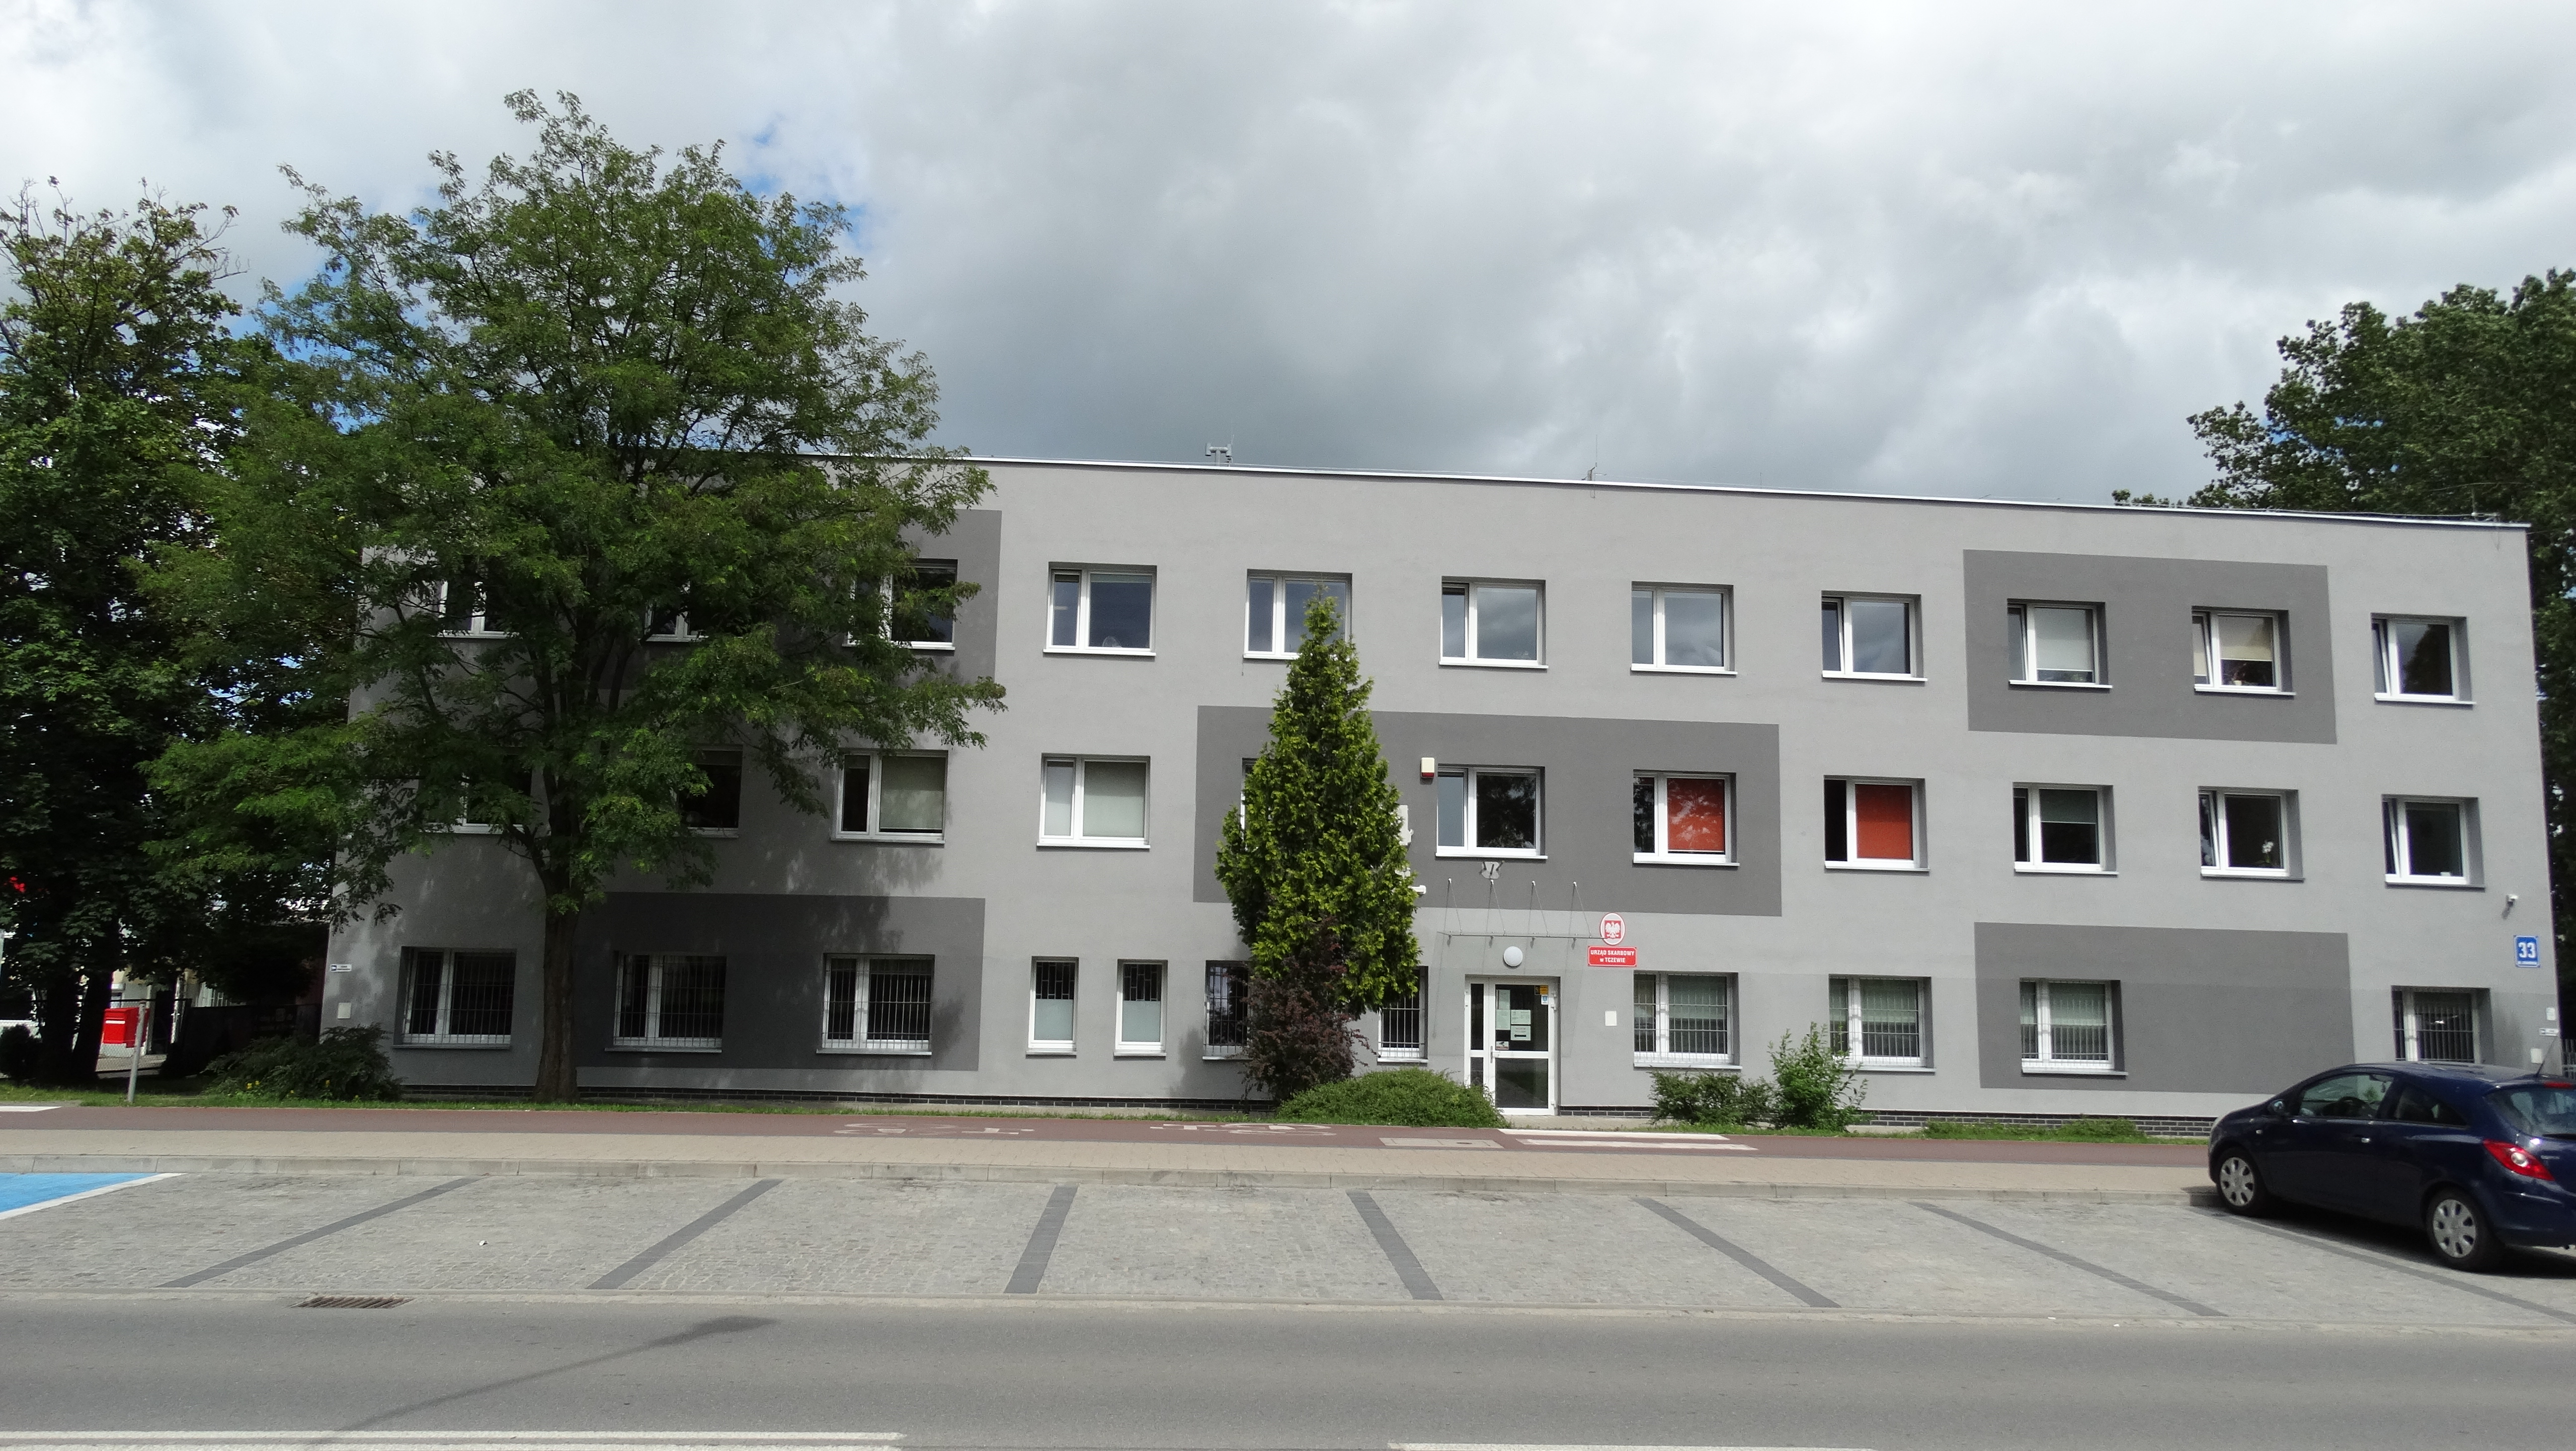 Dwupiętrowy budynek, w którym znajduje się siedziba Urzędu Skarbowego w Tczewie. Wokół drzewa